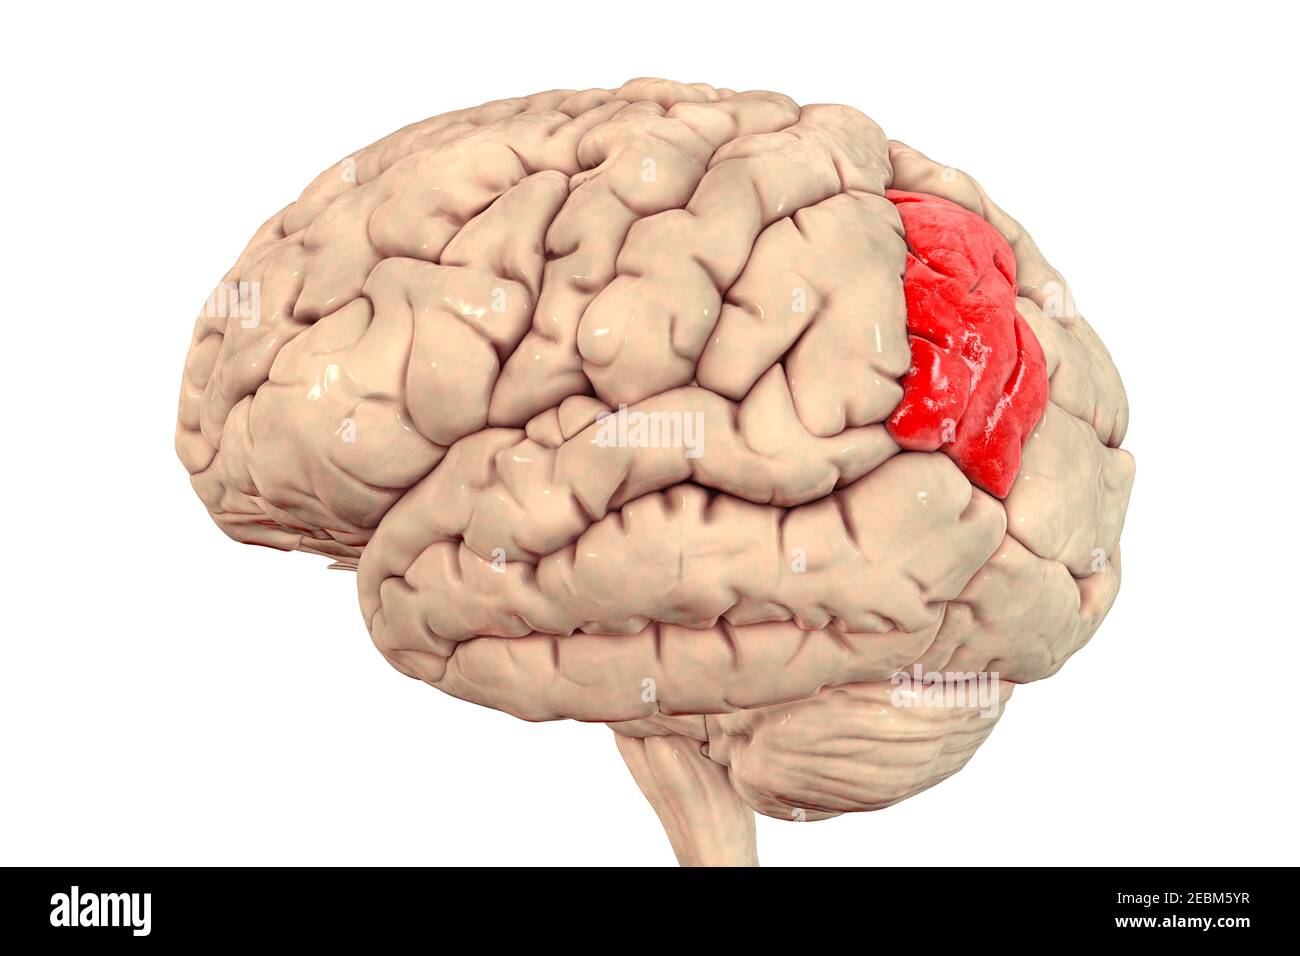 Cerveau humain avec gyrus angulaire mis en évidence, illustration Banque D'Images